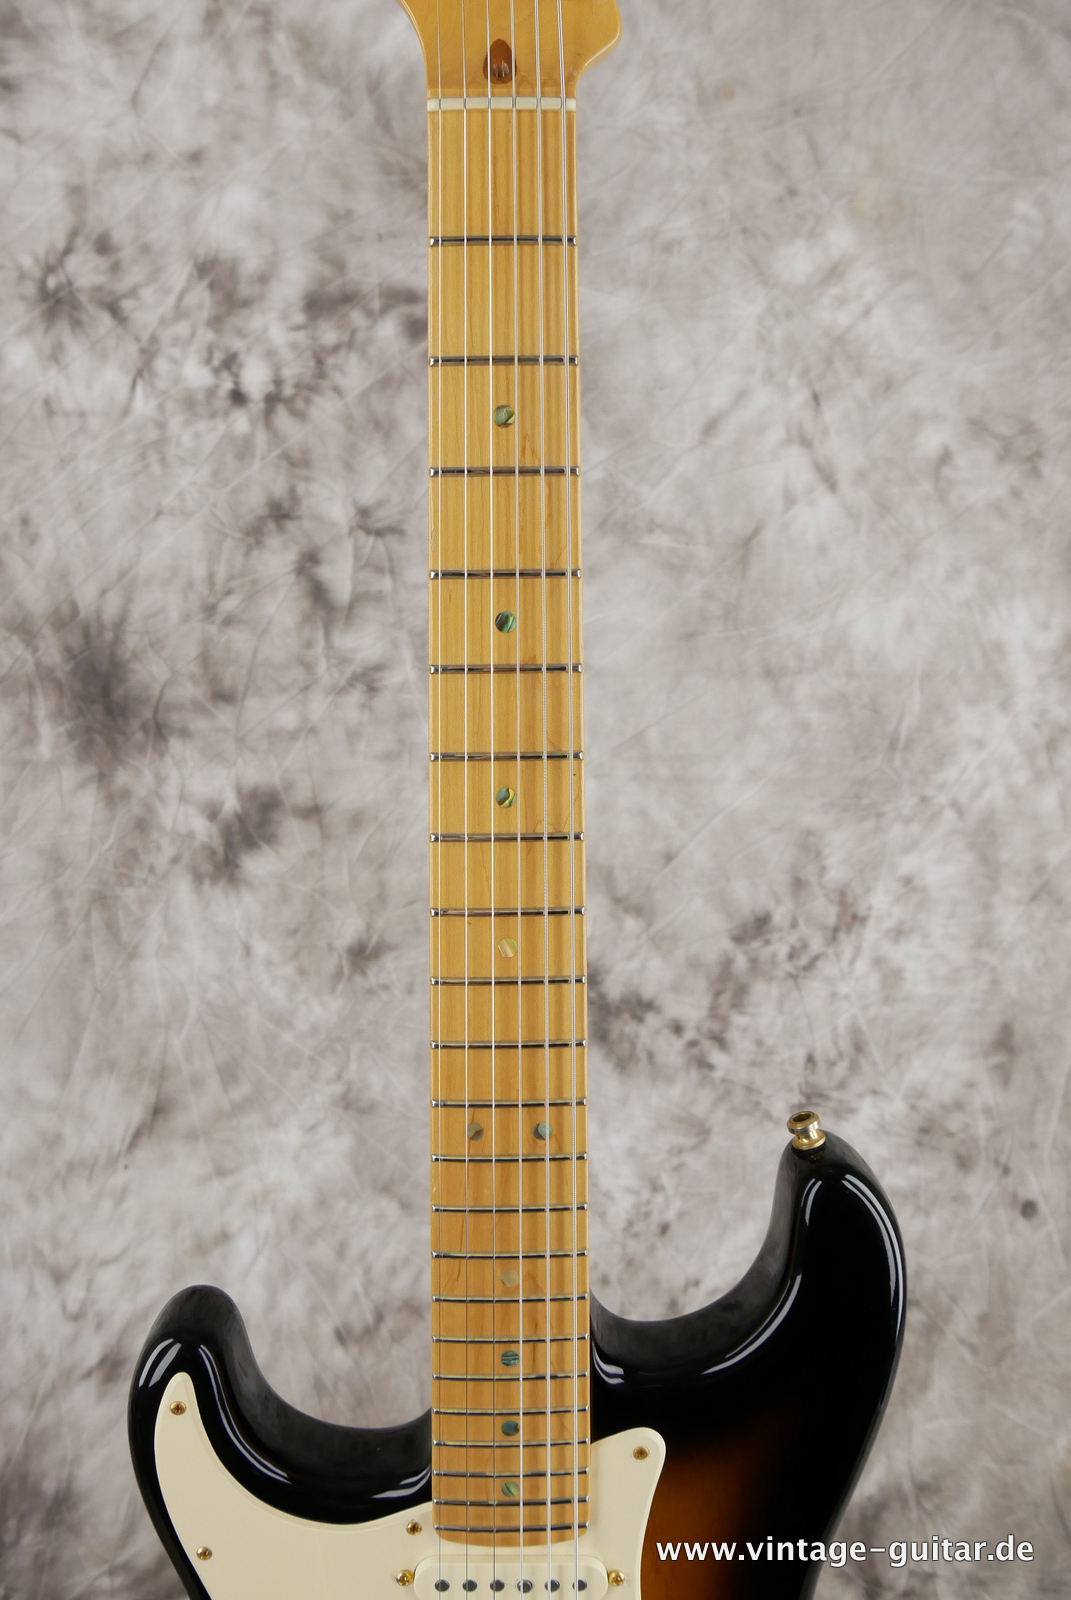 Fender_Stratocaster_deluxe_50th_anniversary__left_hand_sunburst_tweed_case_2004-005.JPG